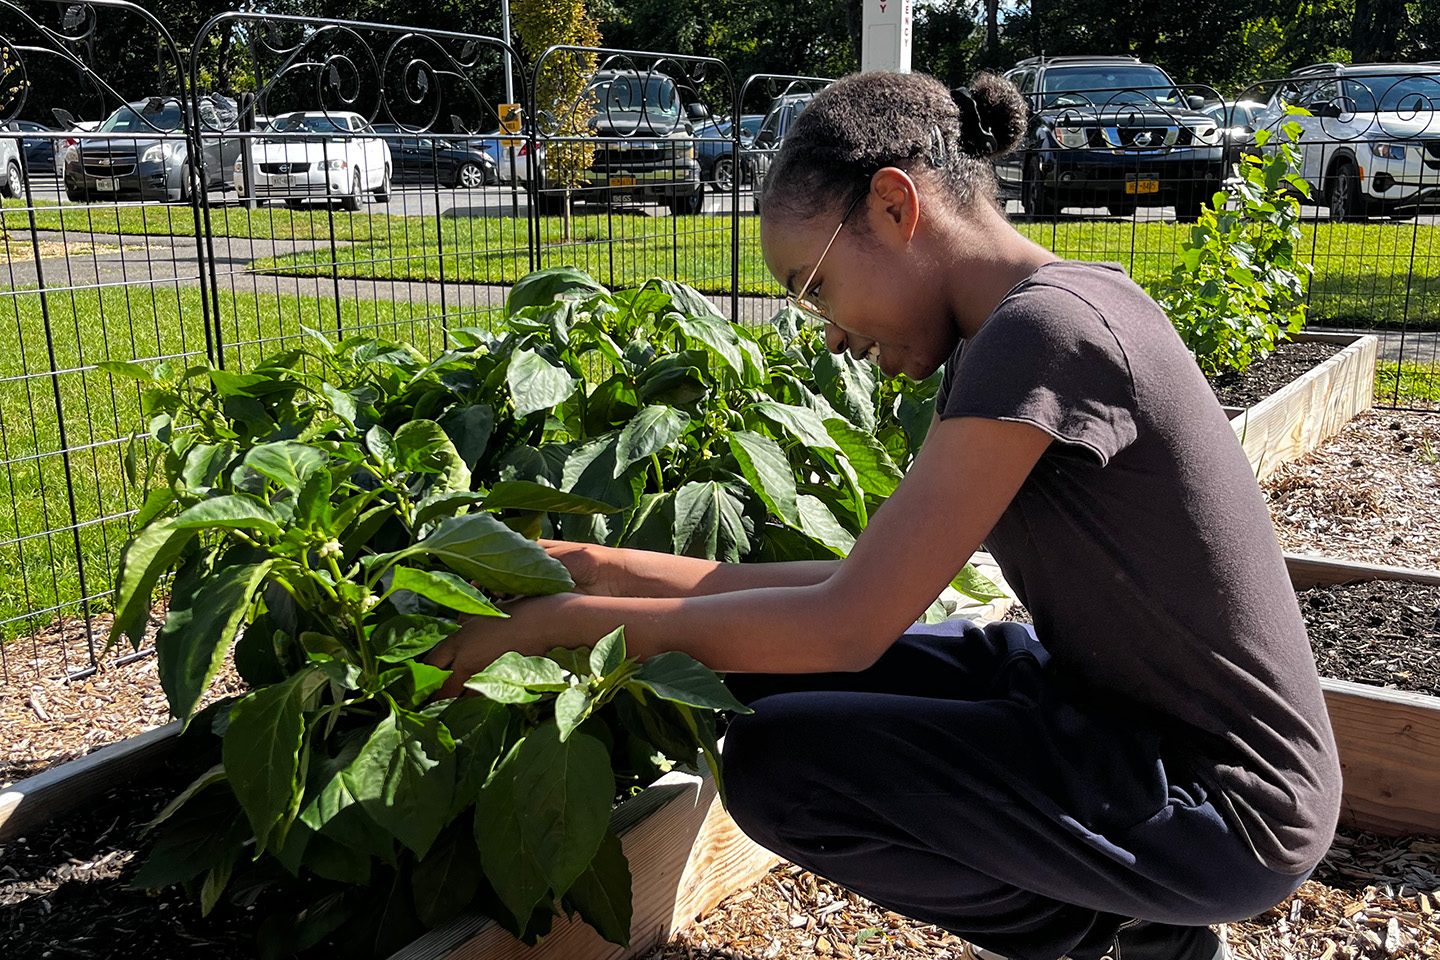 Student garden volunteer tending to the plants in the Adelphi University Community Garden.